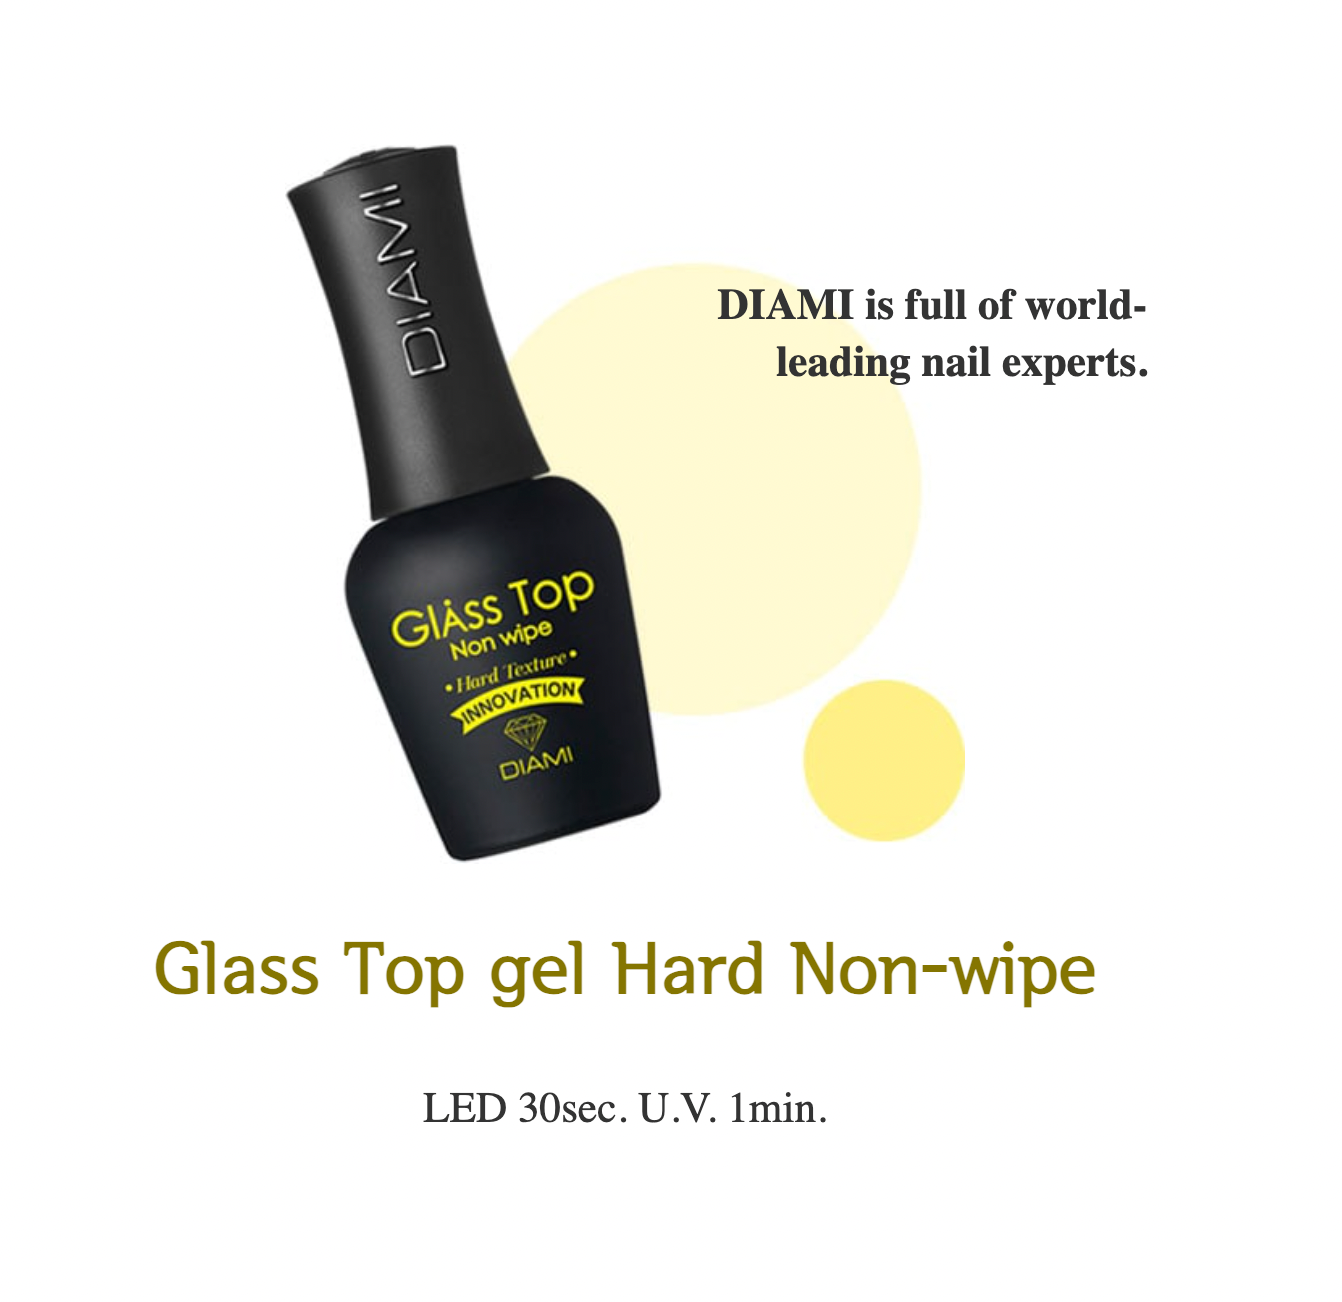 DIAMI - GLASS Top Gel (Non-wipe)